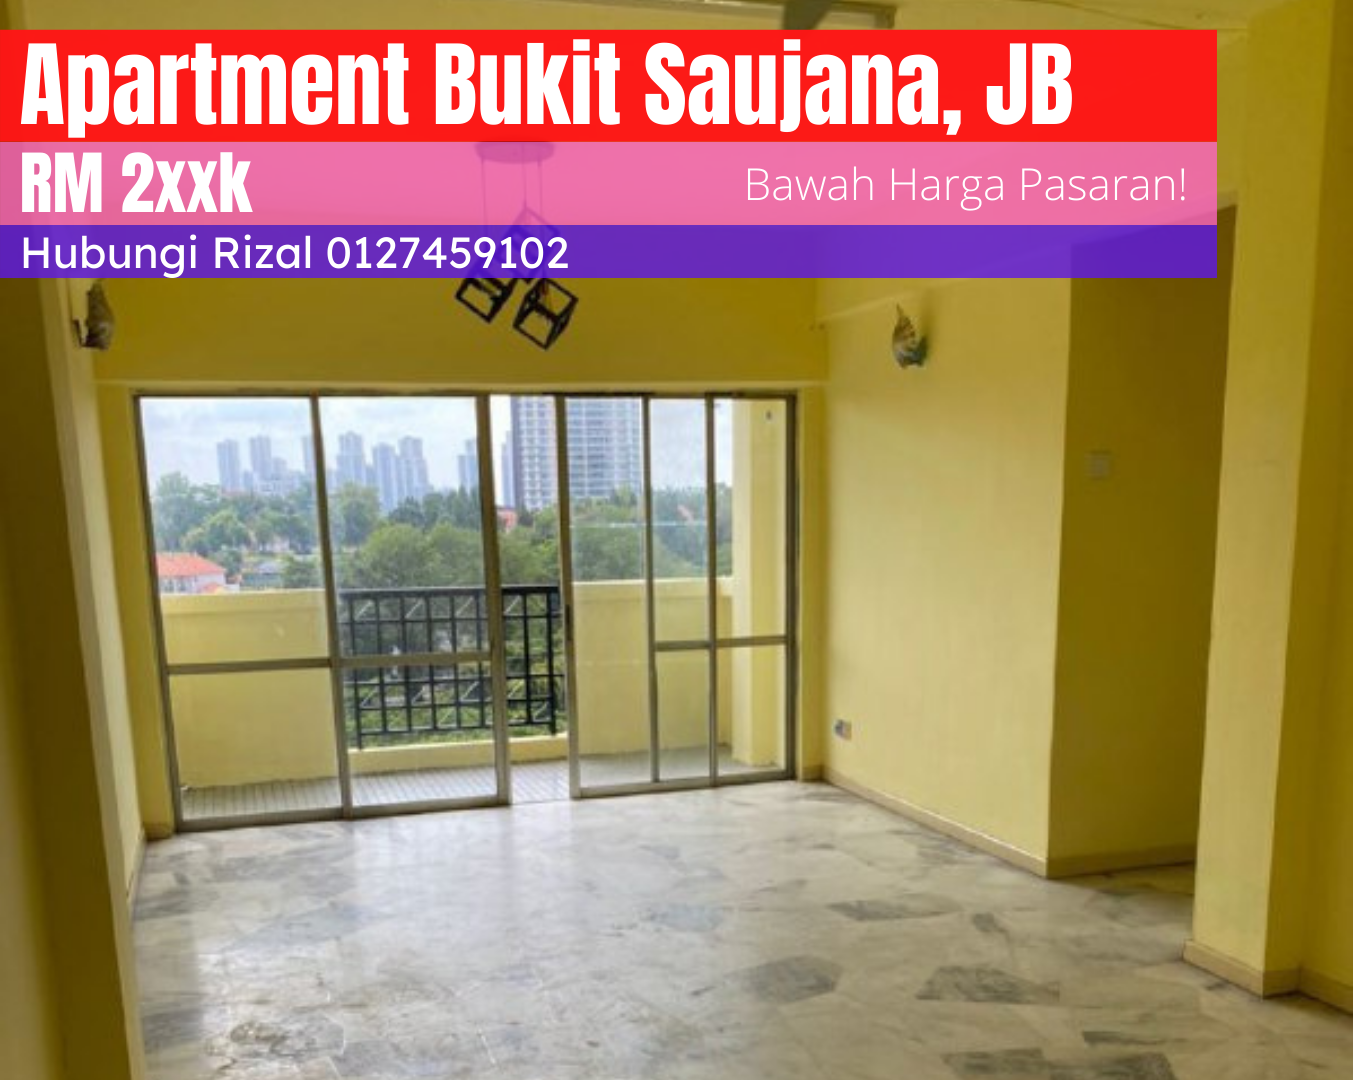 Pahlawan X, Apartment Bukit Saujana, Johor Bahru, Johor